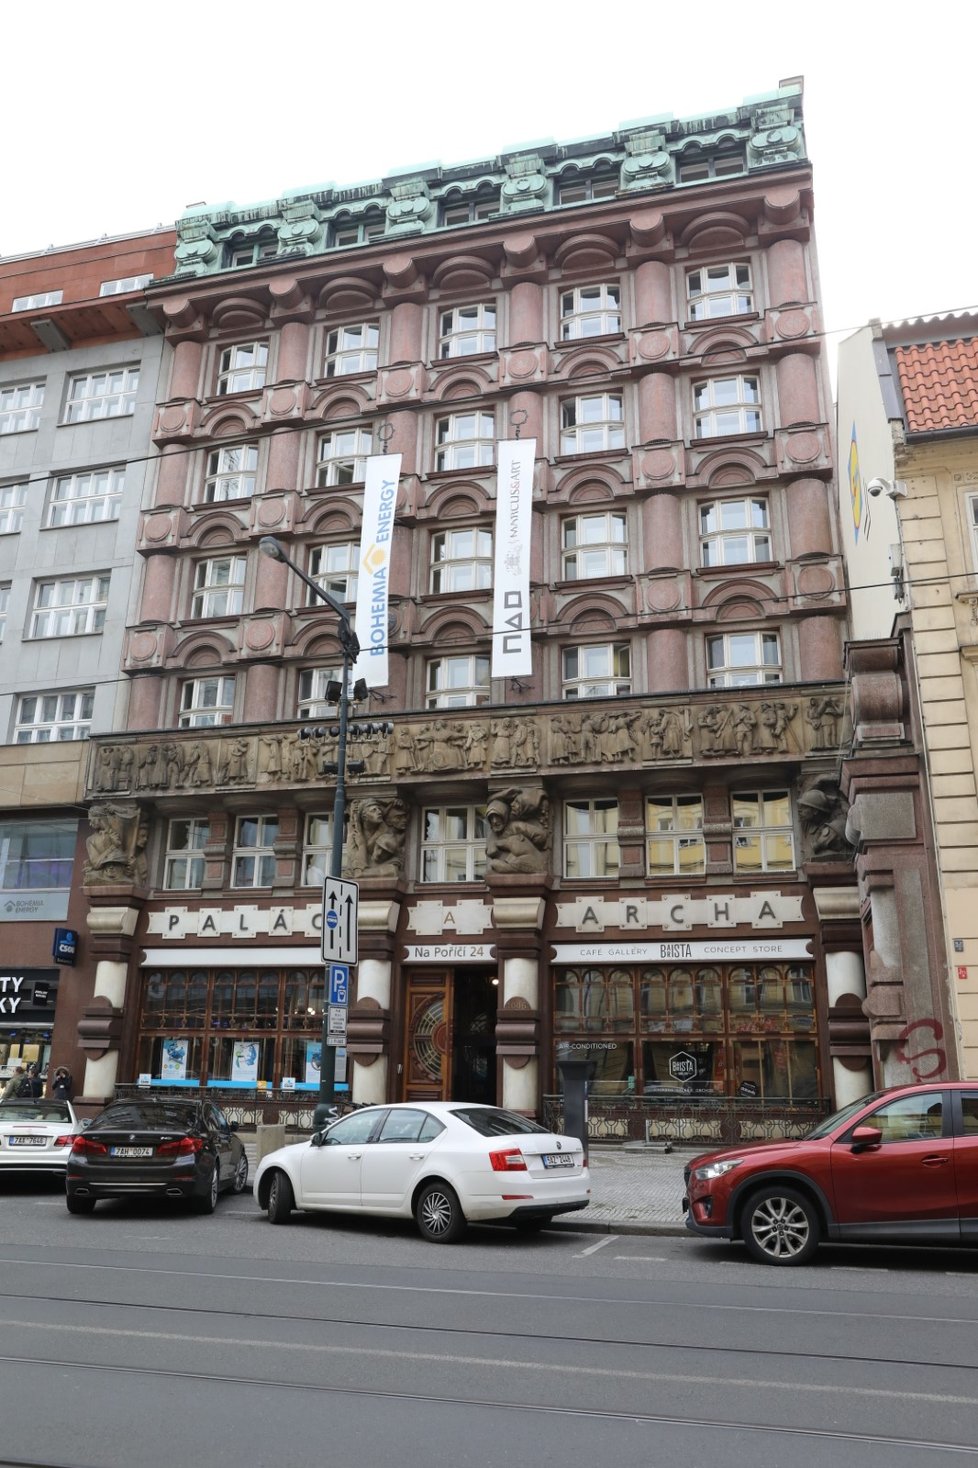 Bohemia Energy měla kanceláře v centru Prahy.